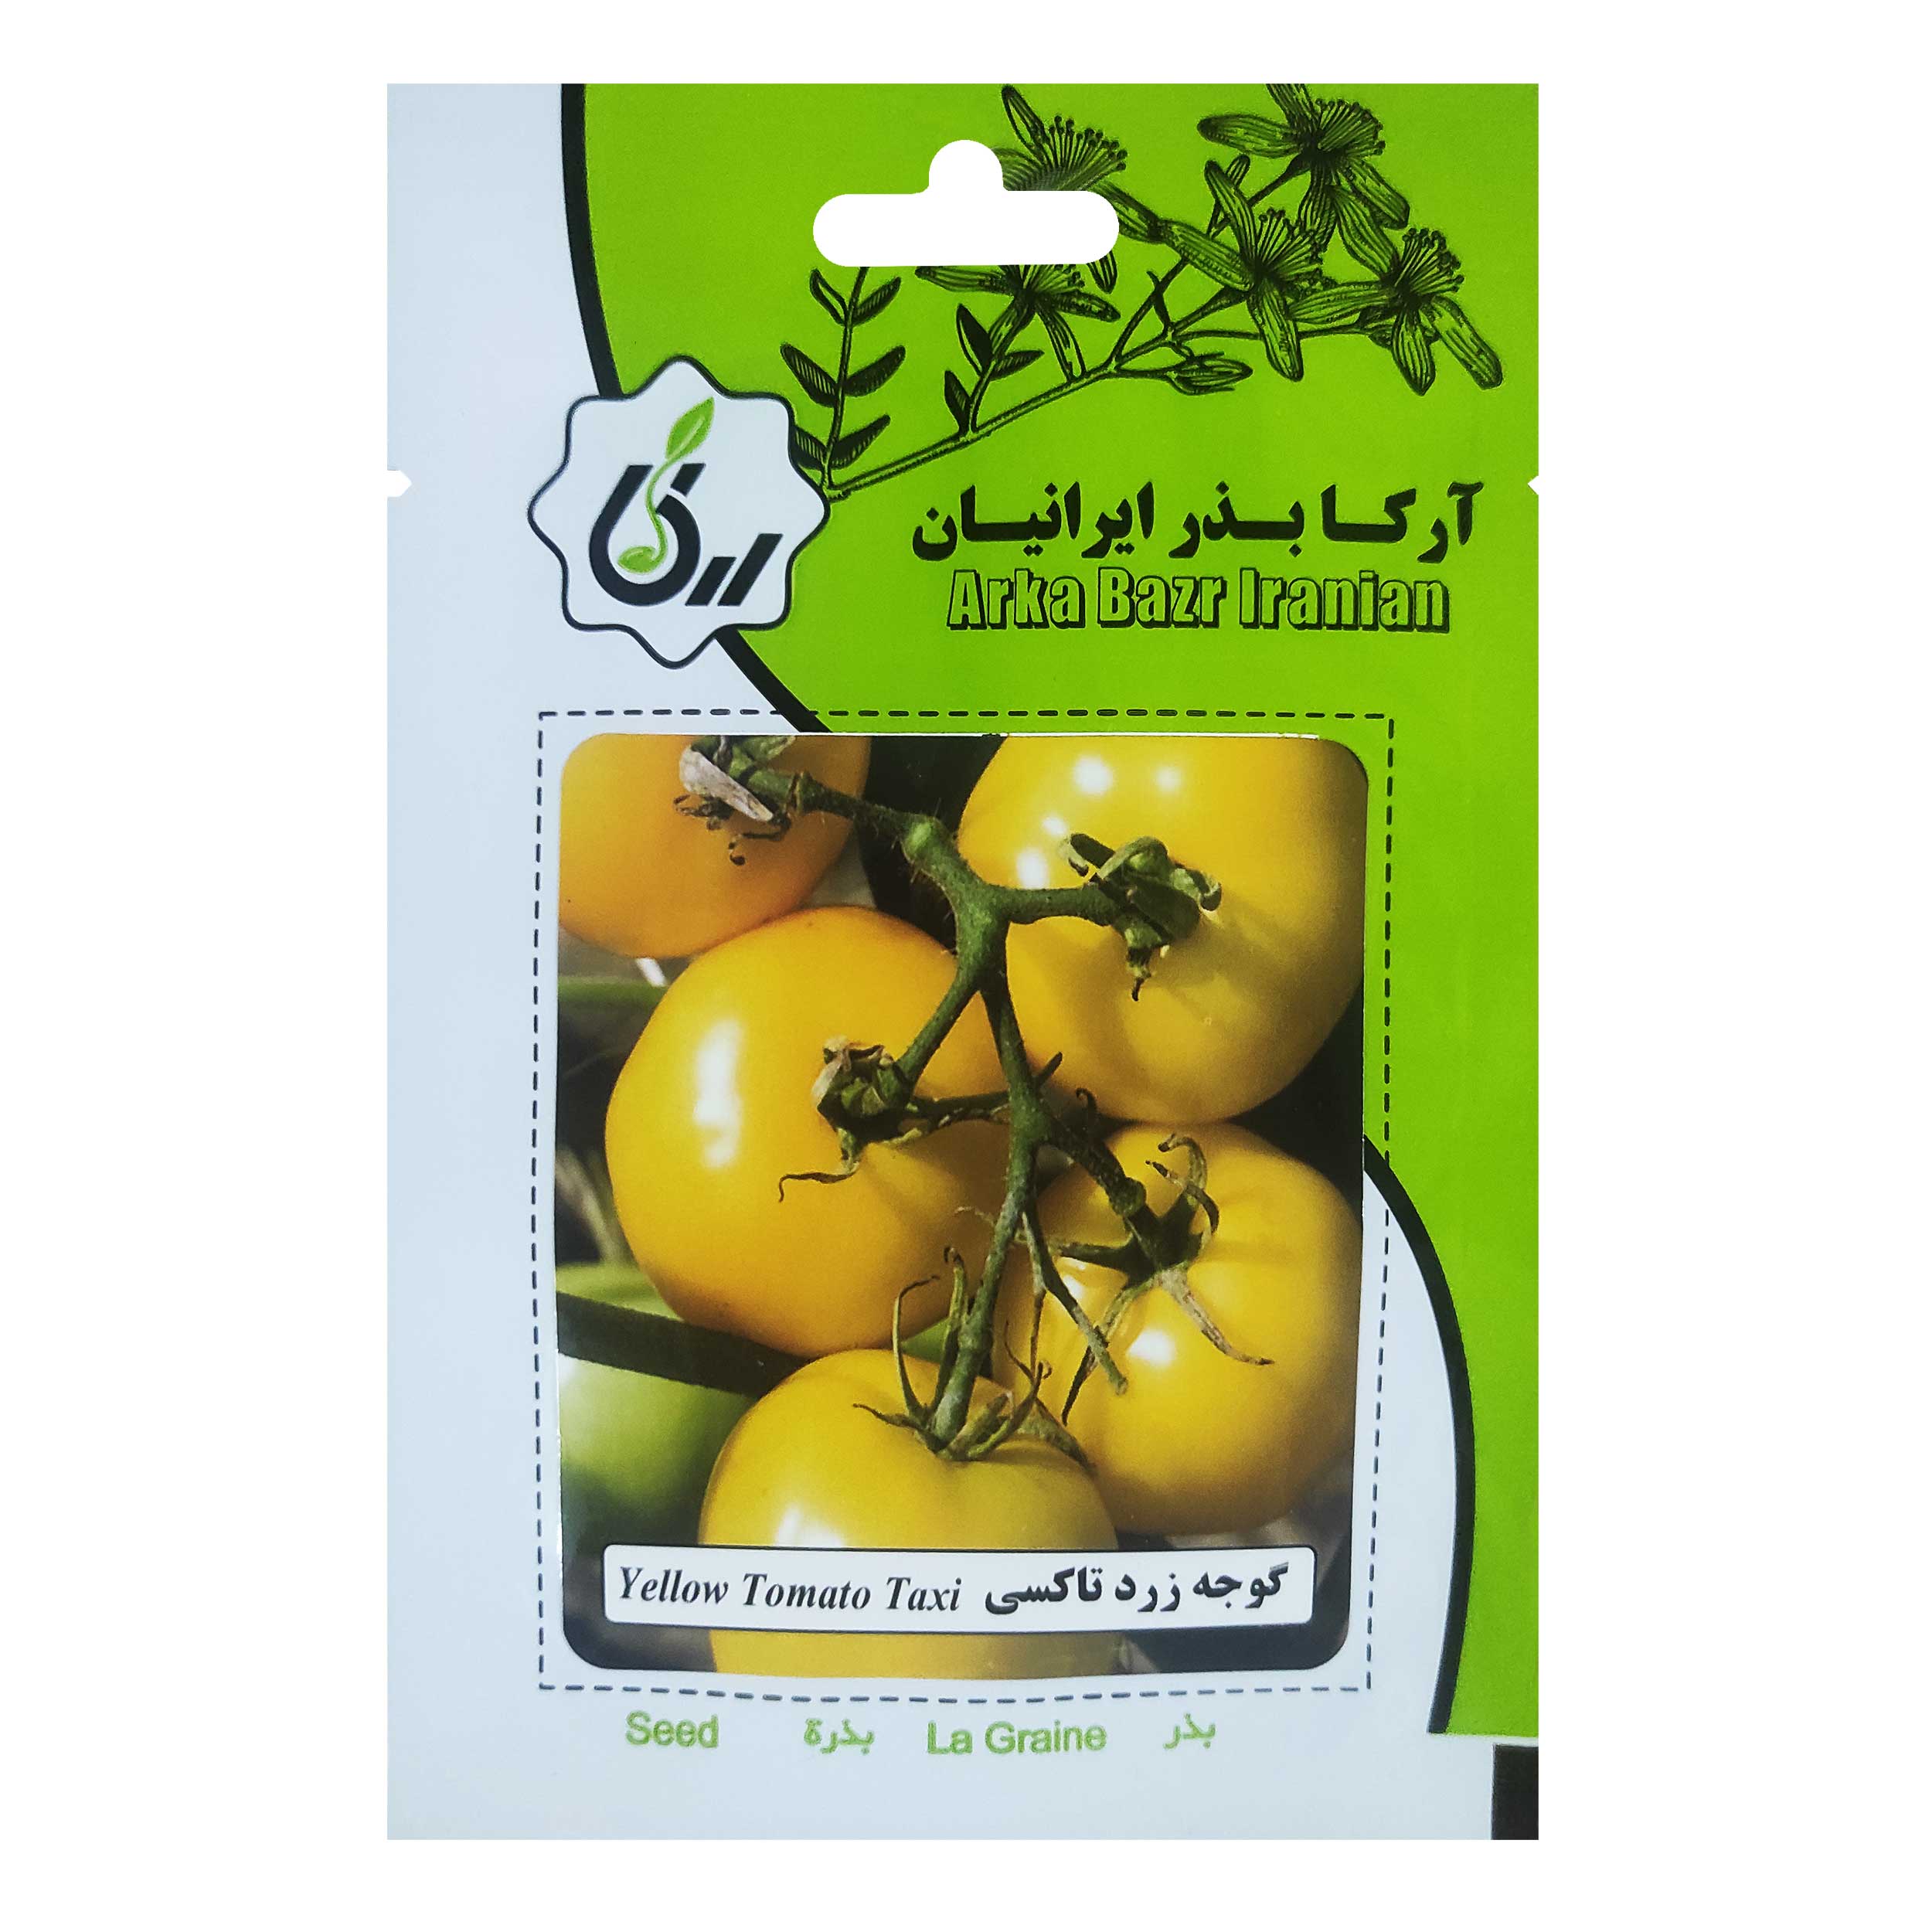 بذر گوجه زرد تاکسی آرکا بذر ایرانیان کد 150-ARK